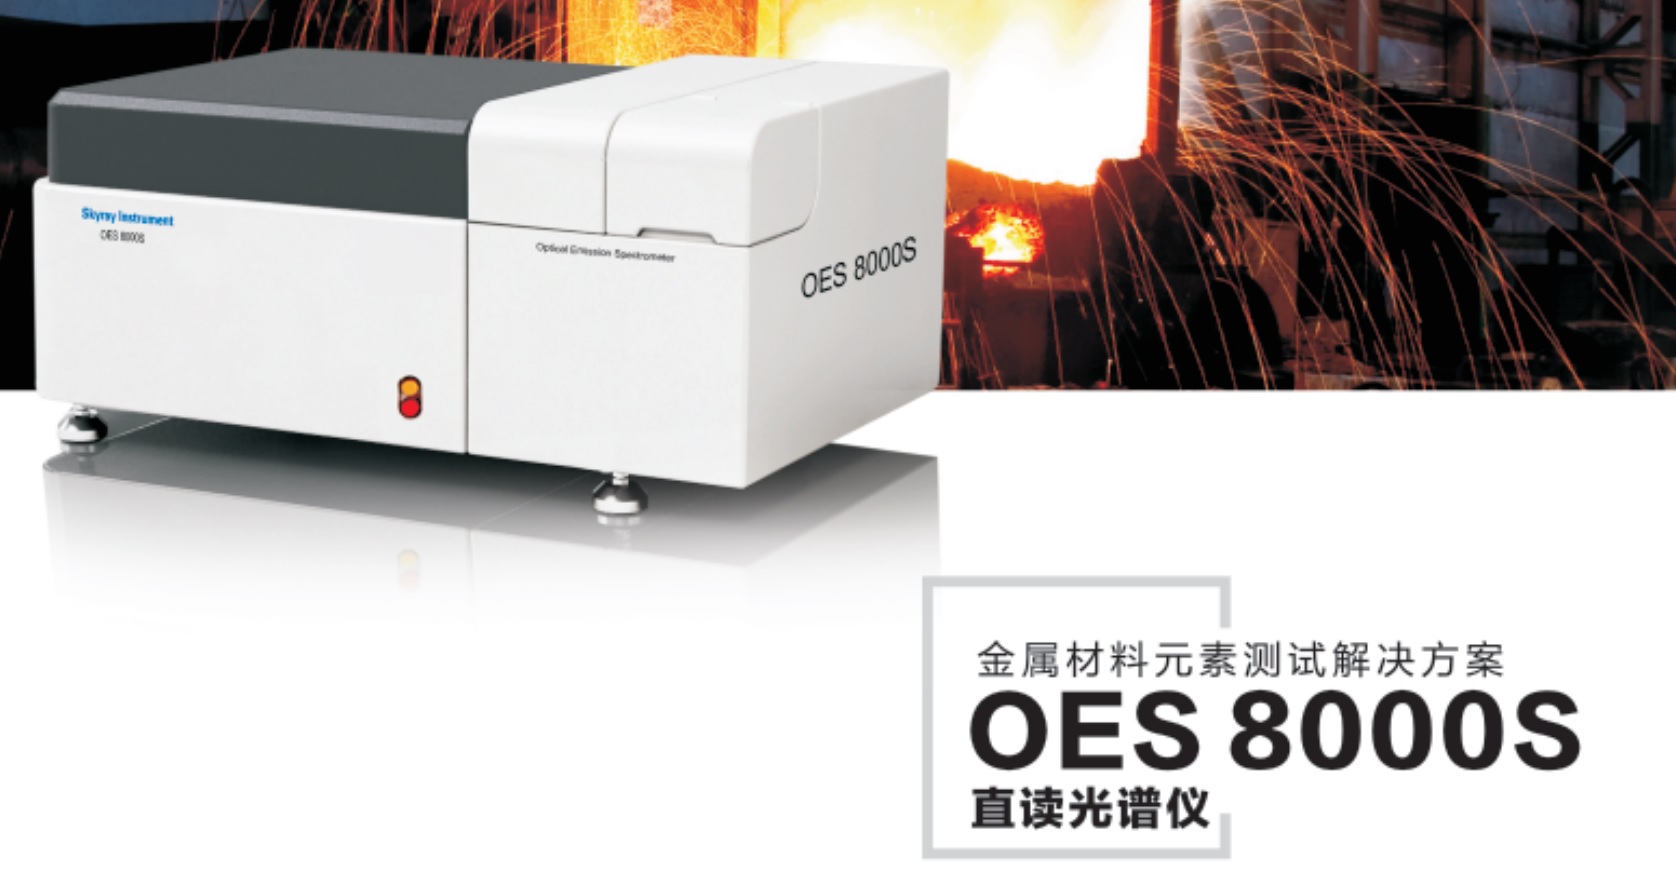 江苏天瑞仪器股份有限公司-OES8000S